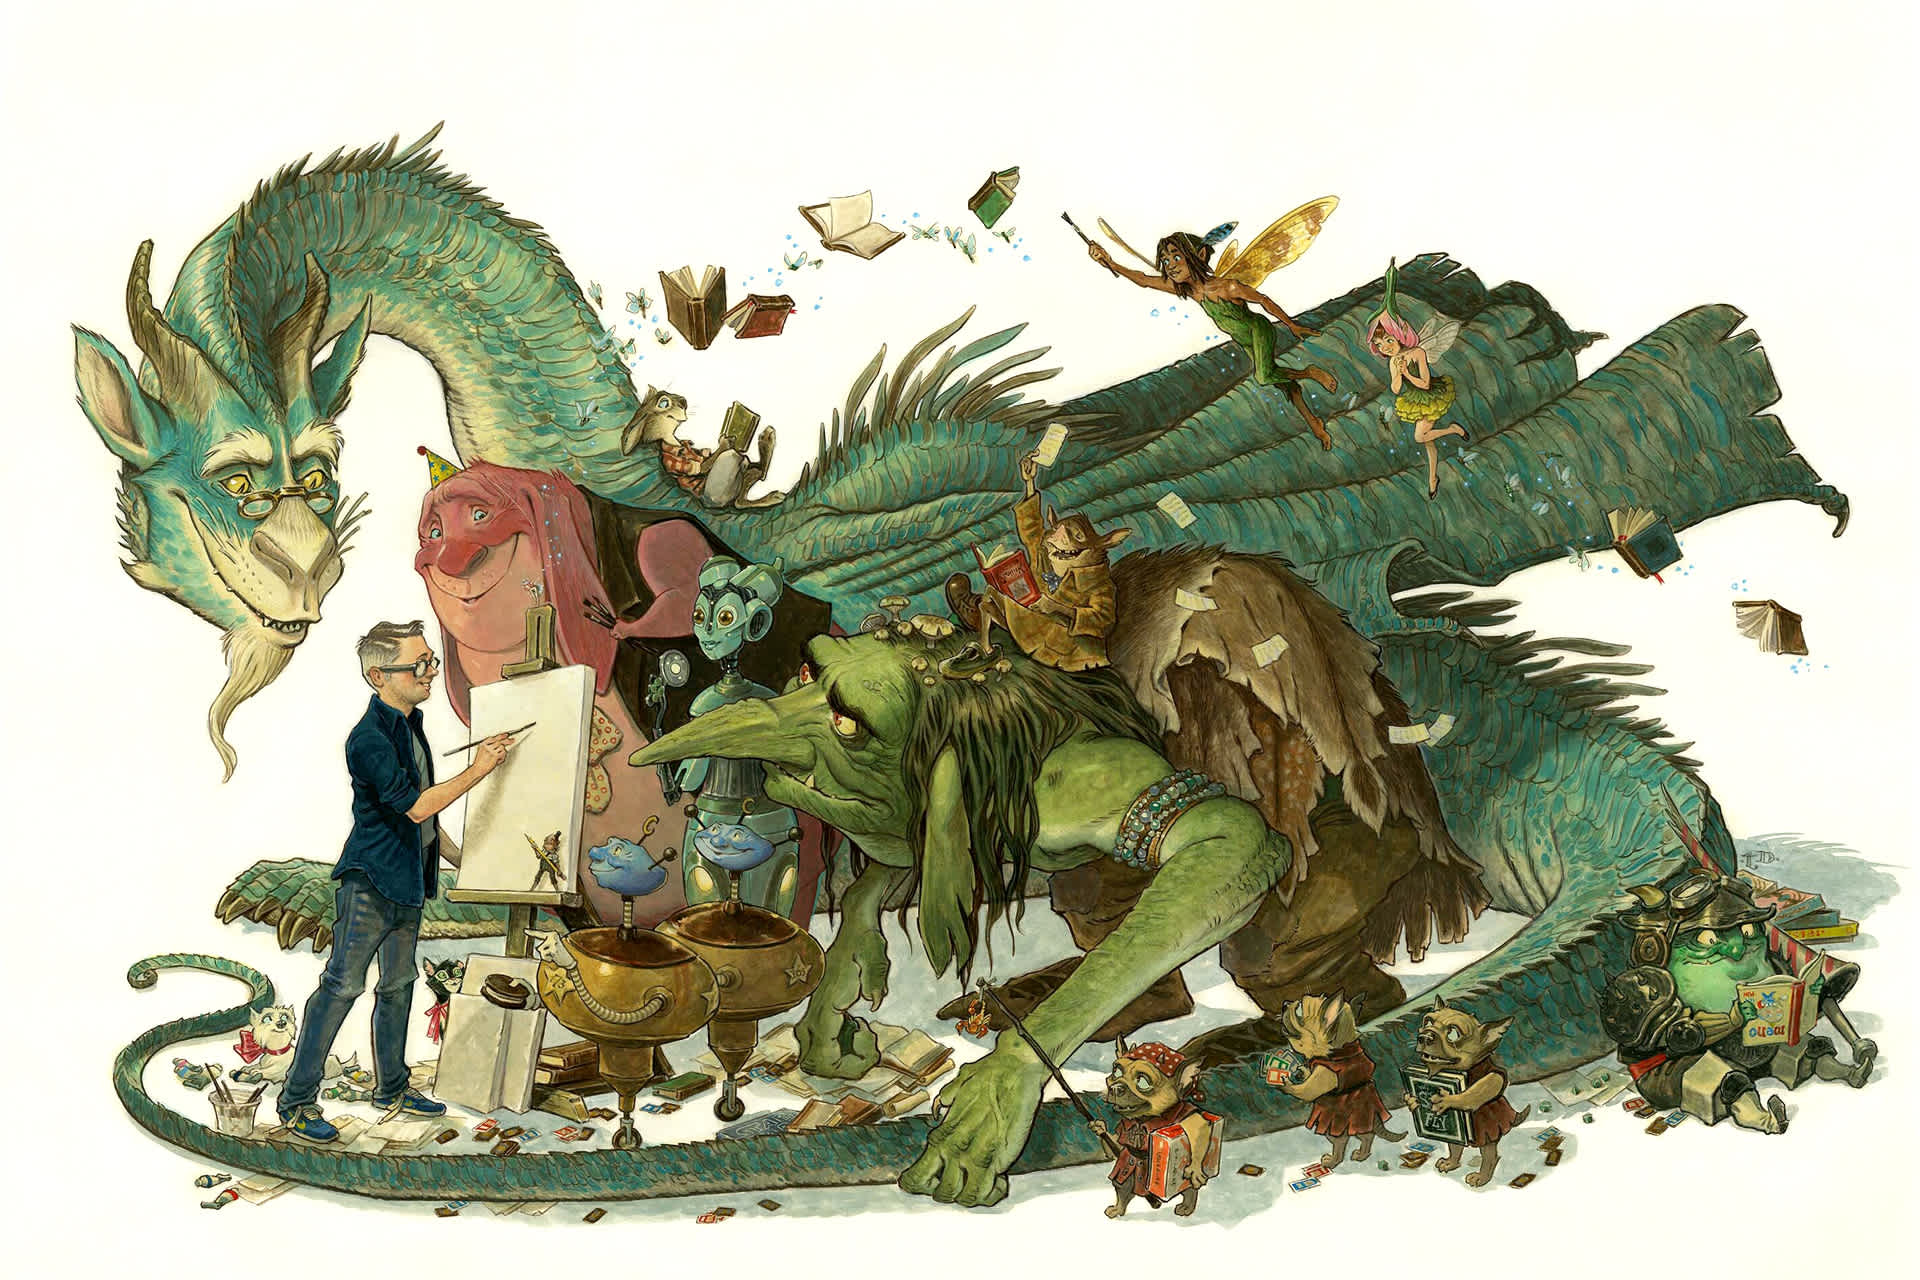 artwork showing dragon